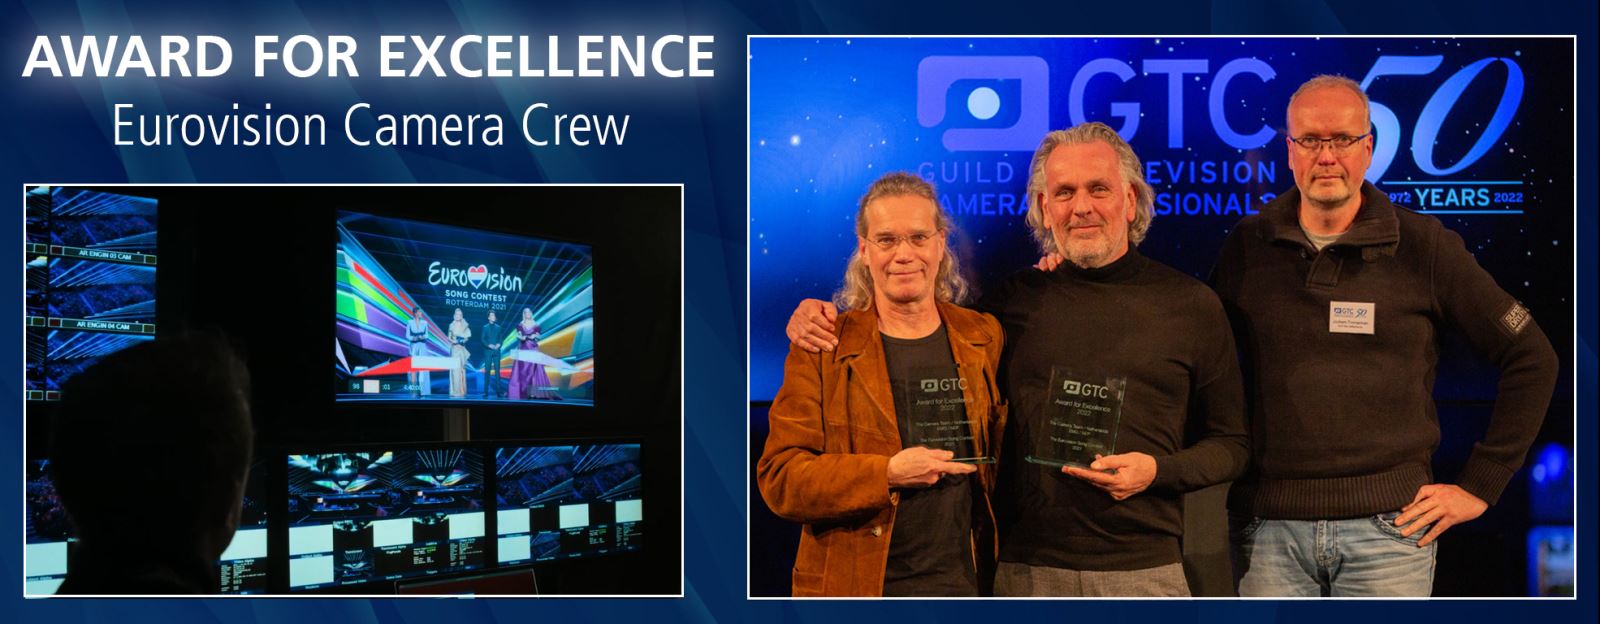 Award for Excellence - Eurovision Camera Crew